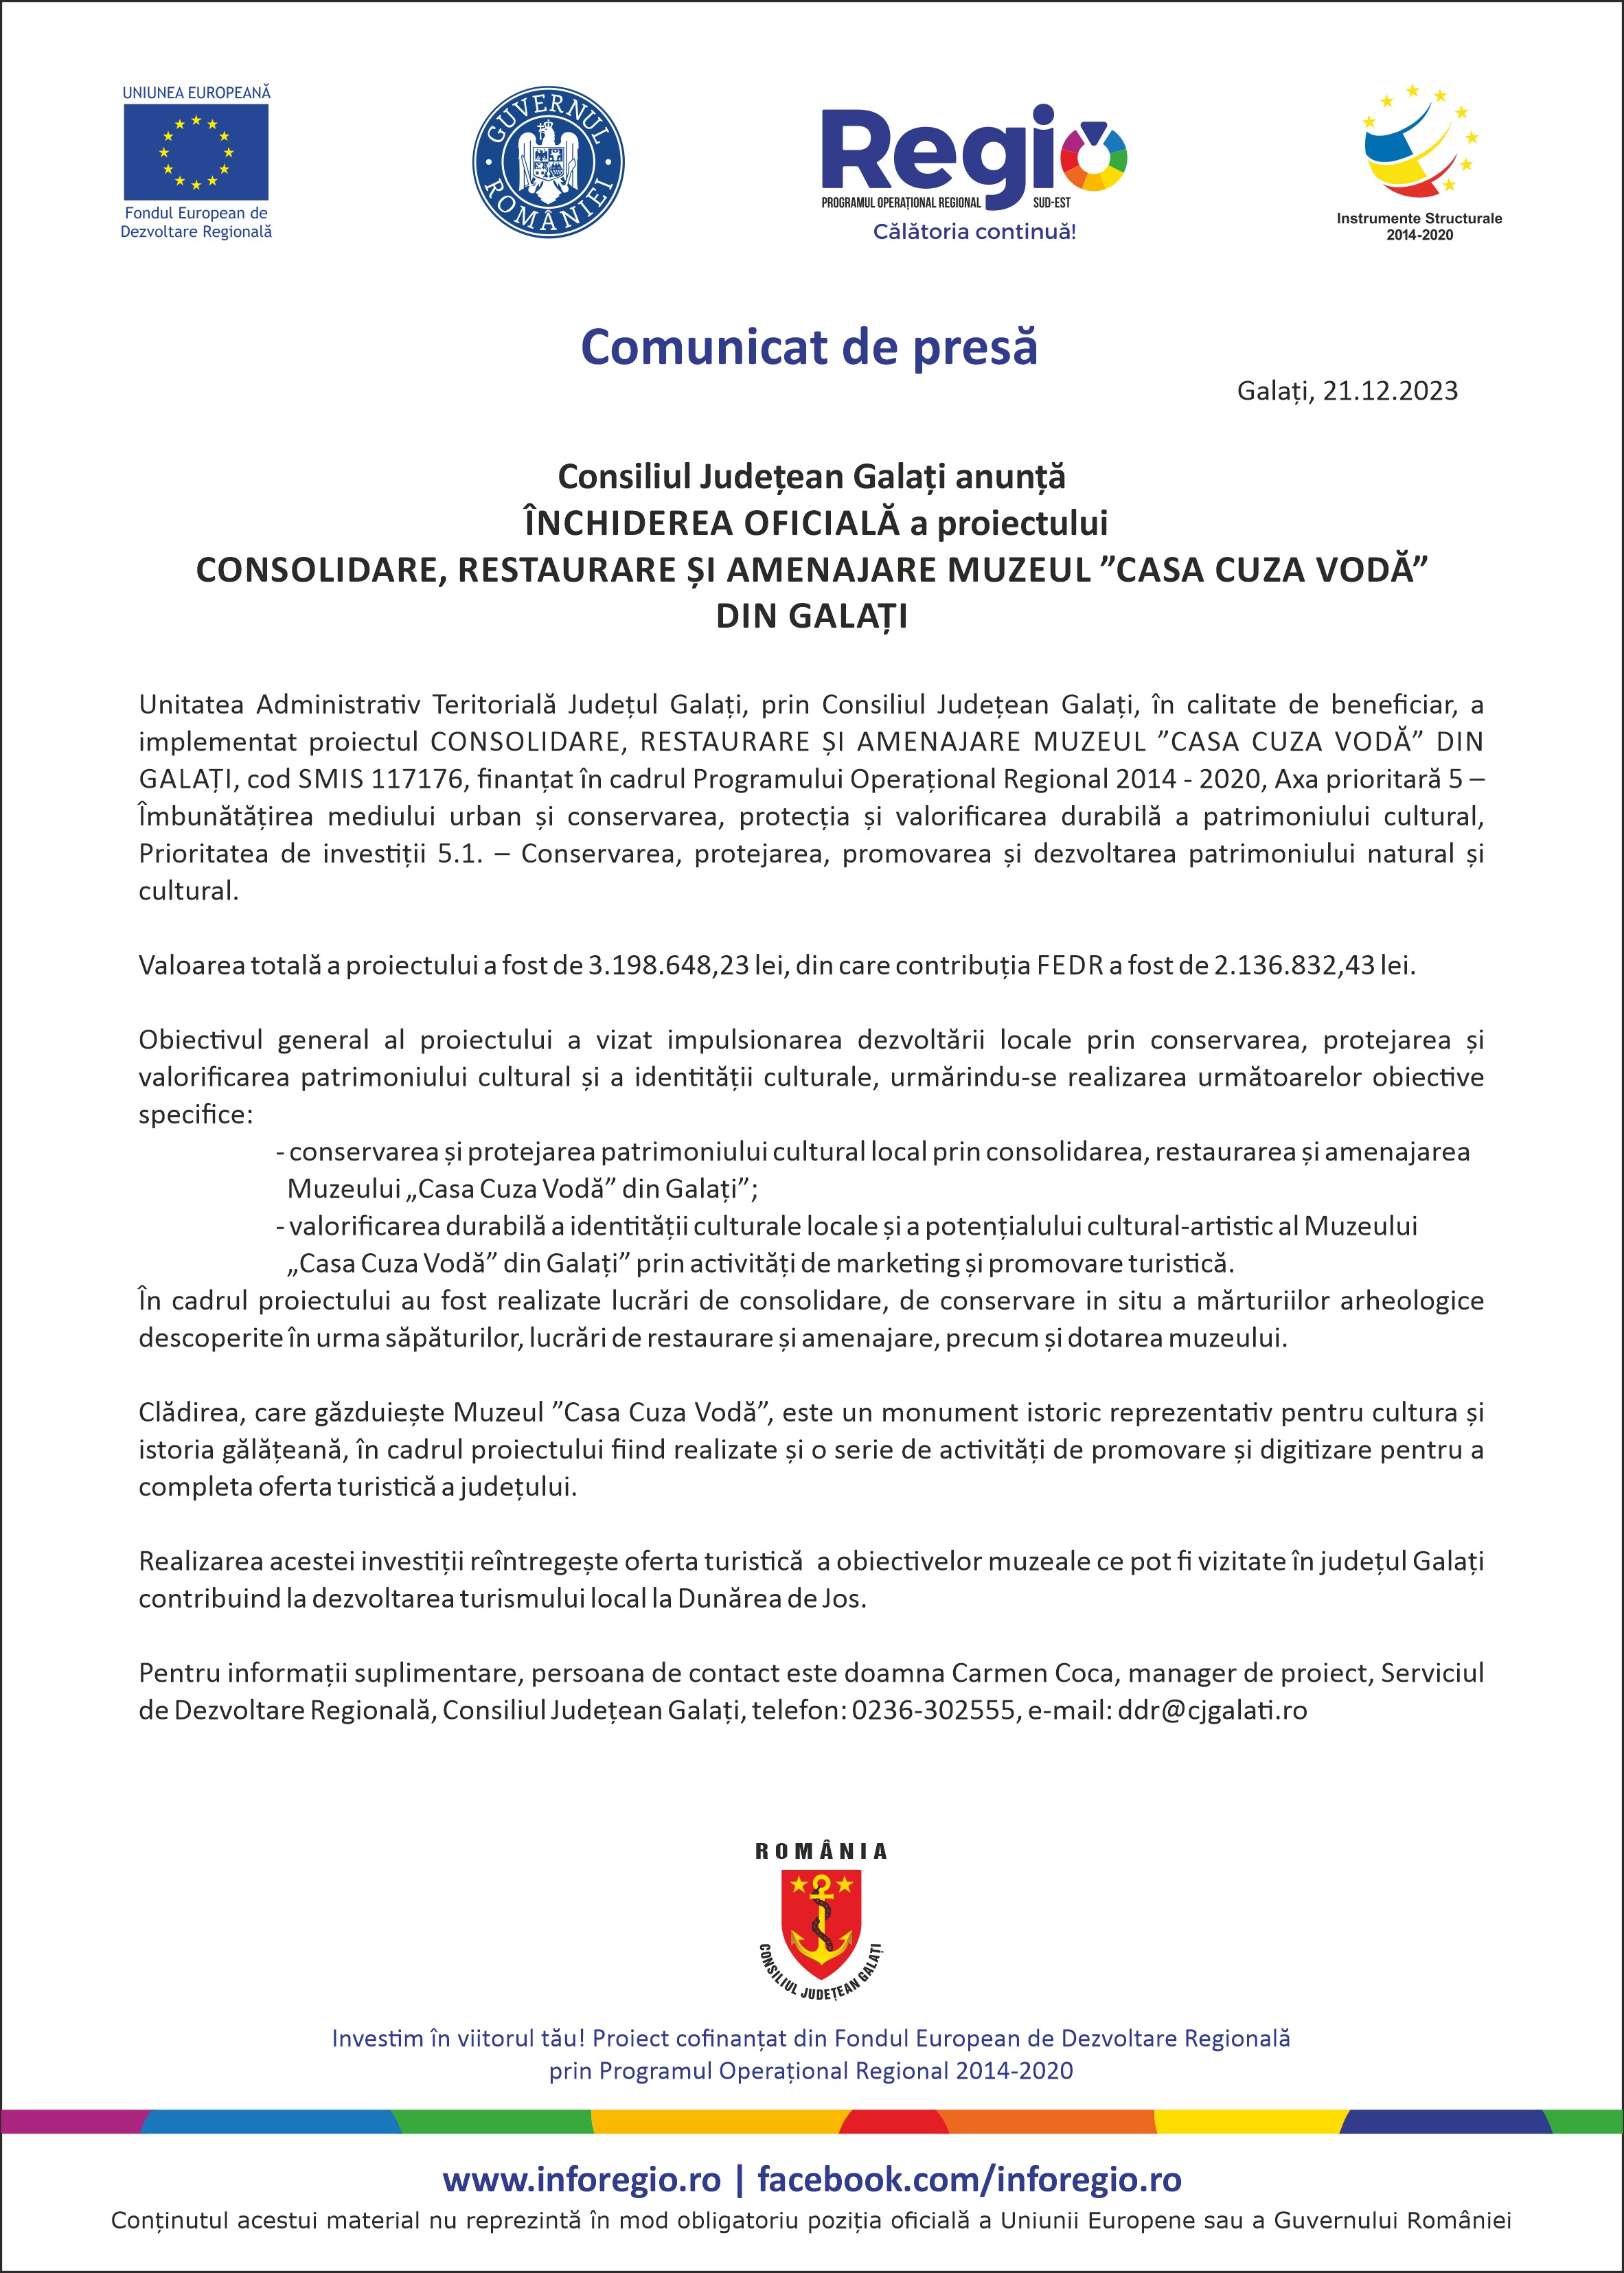 Consiliul Județean Galați anunță ÎNCHIDEREA OFICIALĂ a proiectului CONSOLIDARE, RESTAURARE ȘI AMENAJARE MUZEUL ”CASA CUZA VODĂ” DIN GALAȚI